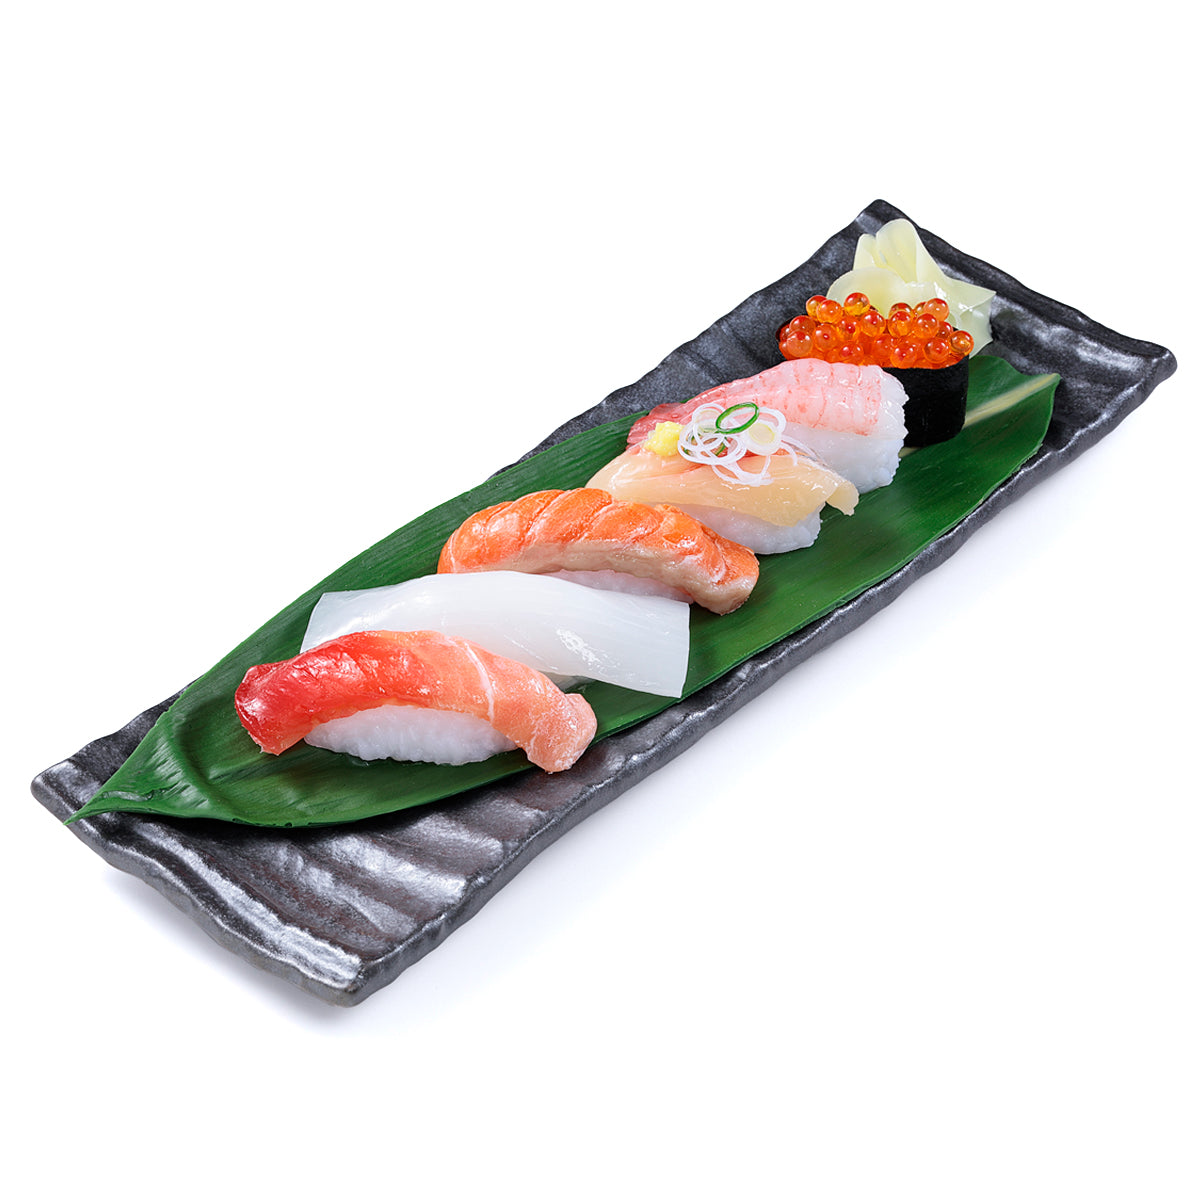 オリジナル食品サンプル「握り寿司」の商品画像です。(英語表記)Sushi of replica food